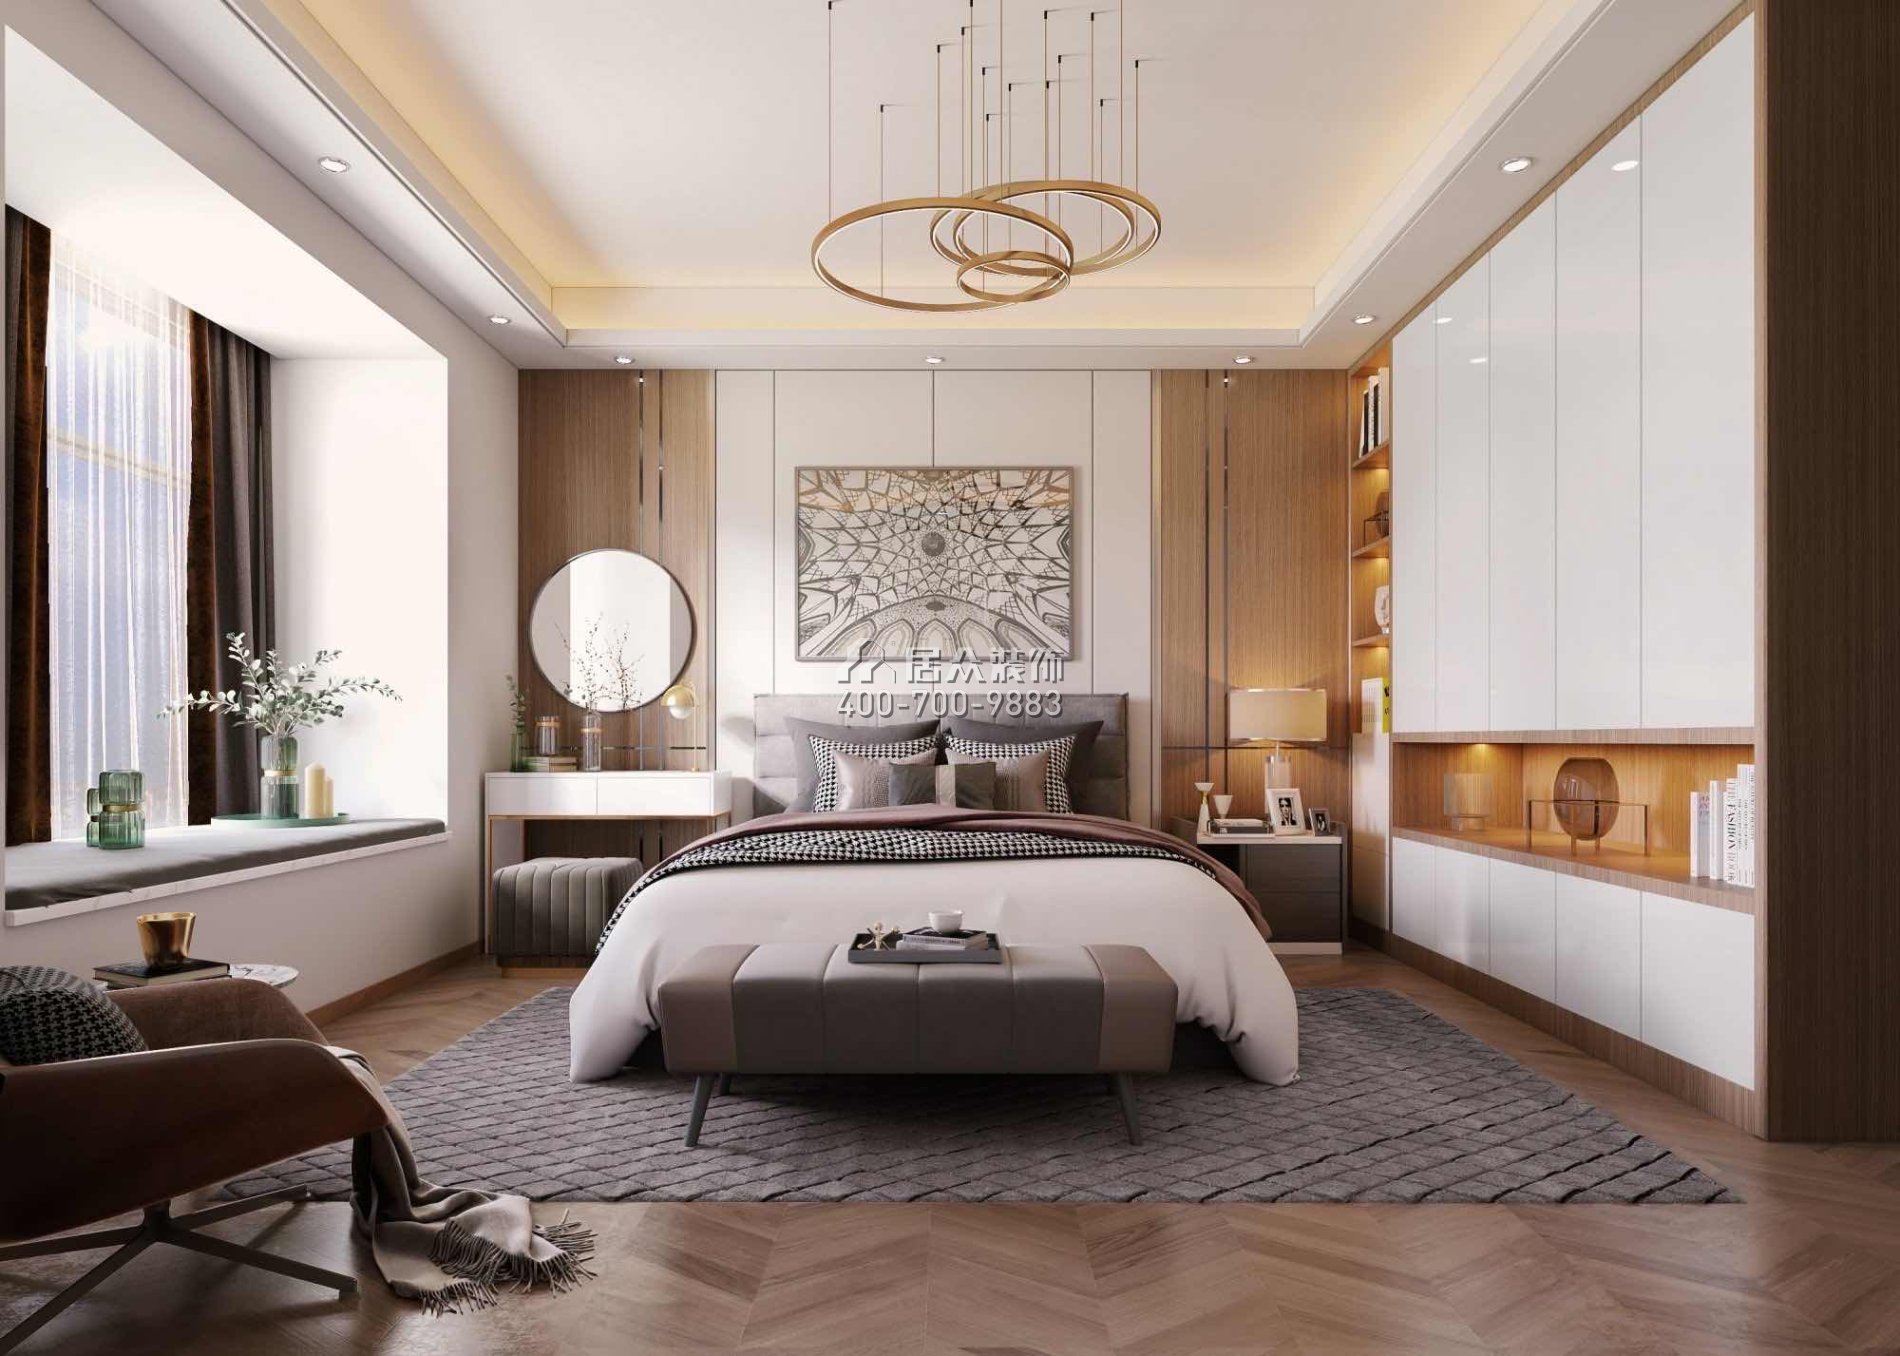 尚东领御216平方米现代简约风格平层户型卧室装修效果图